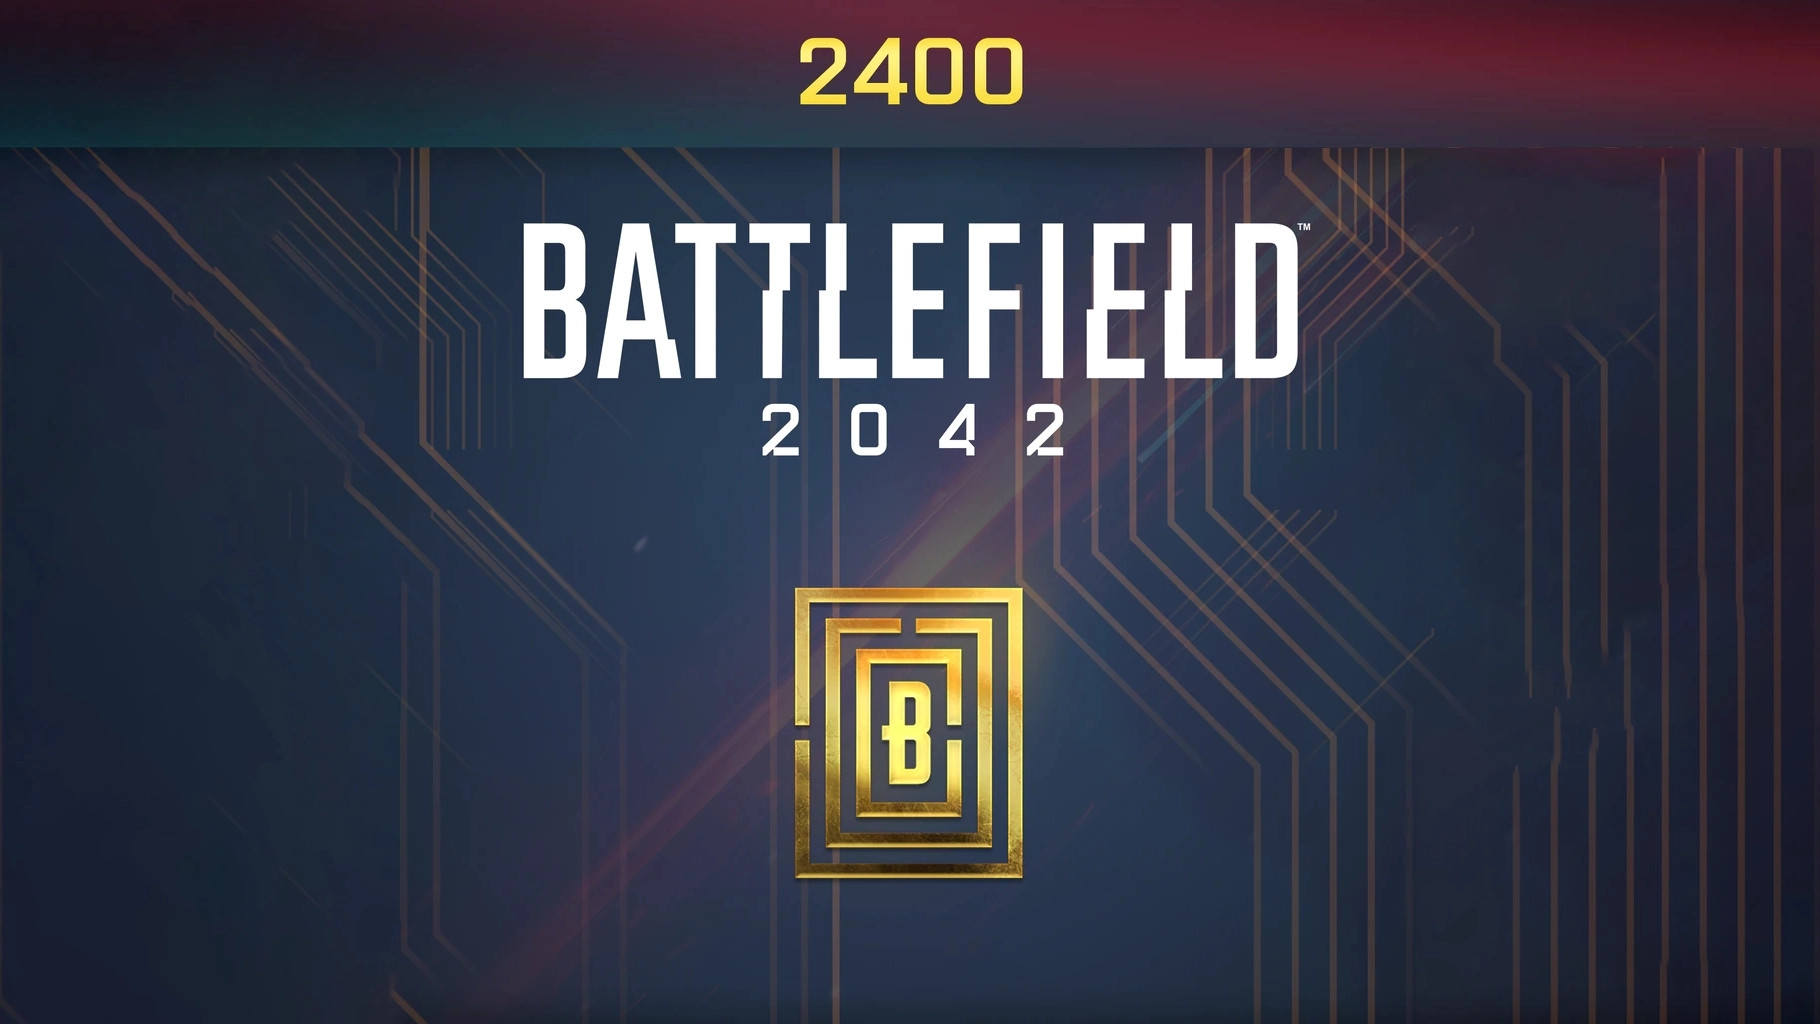 Battlefield 2042 - 2400 BFC Balance XBOX One / Xbox Series X|S CD Key (20.9$)